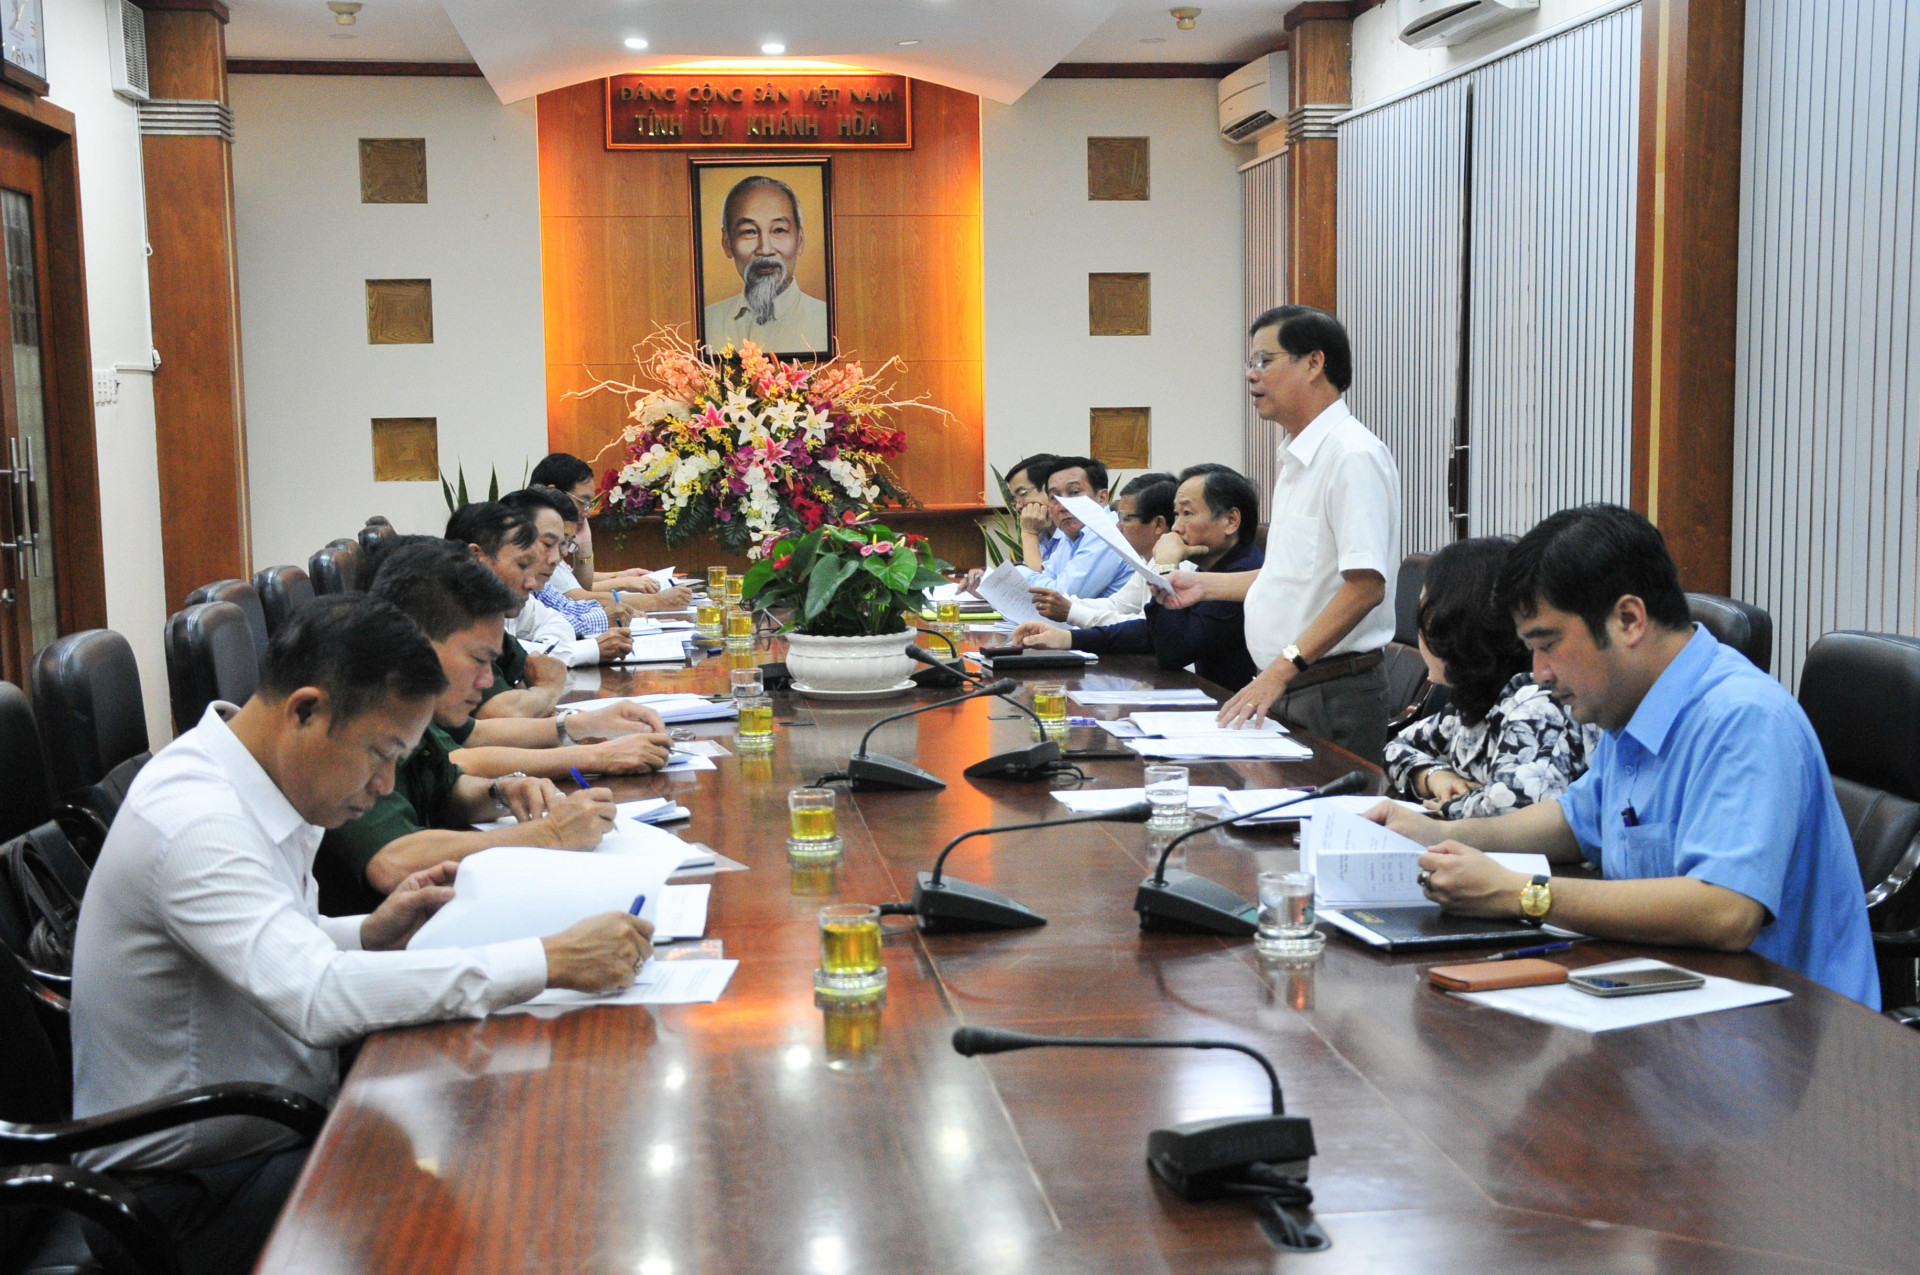 Đồng chí Nguyễn Tấn Tuân chỉ đạo tại buổi làm việc